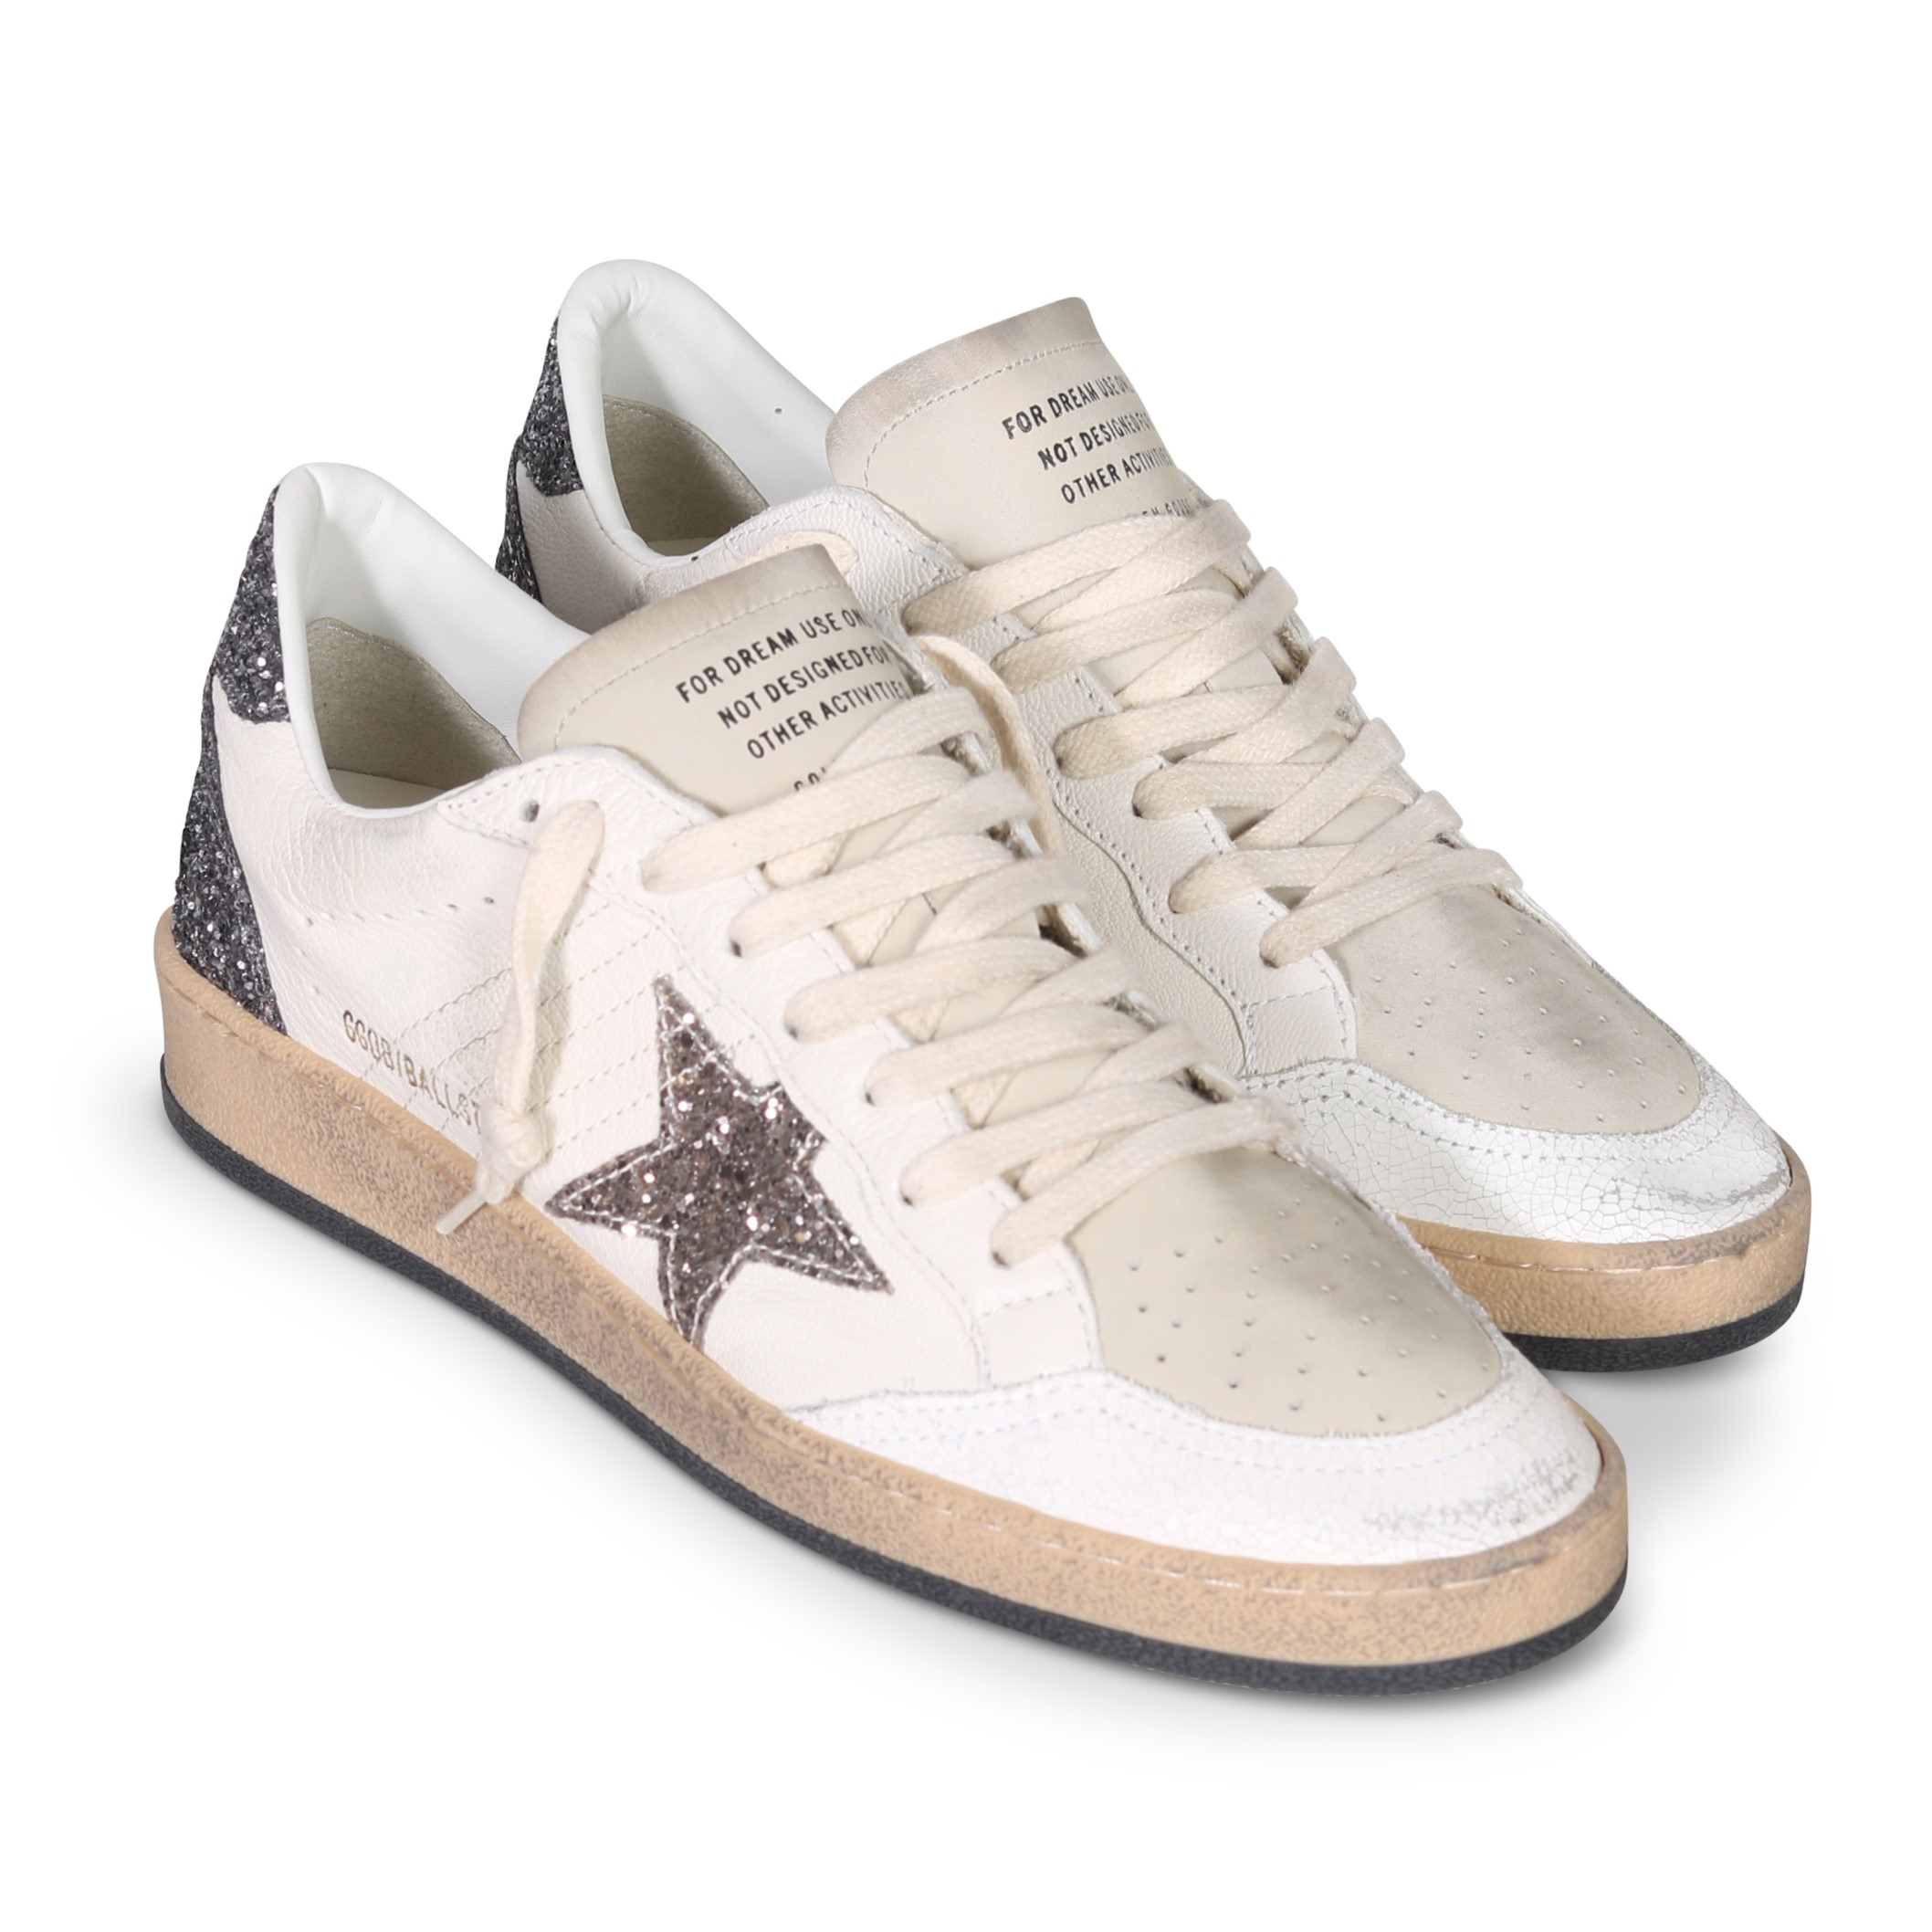 GOLDEN GOOSE Sneaker Ballstar in White/Cinder/Anthracite Glitter 37